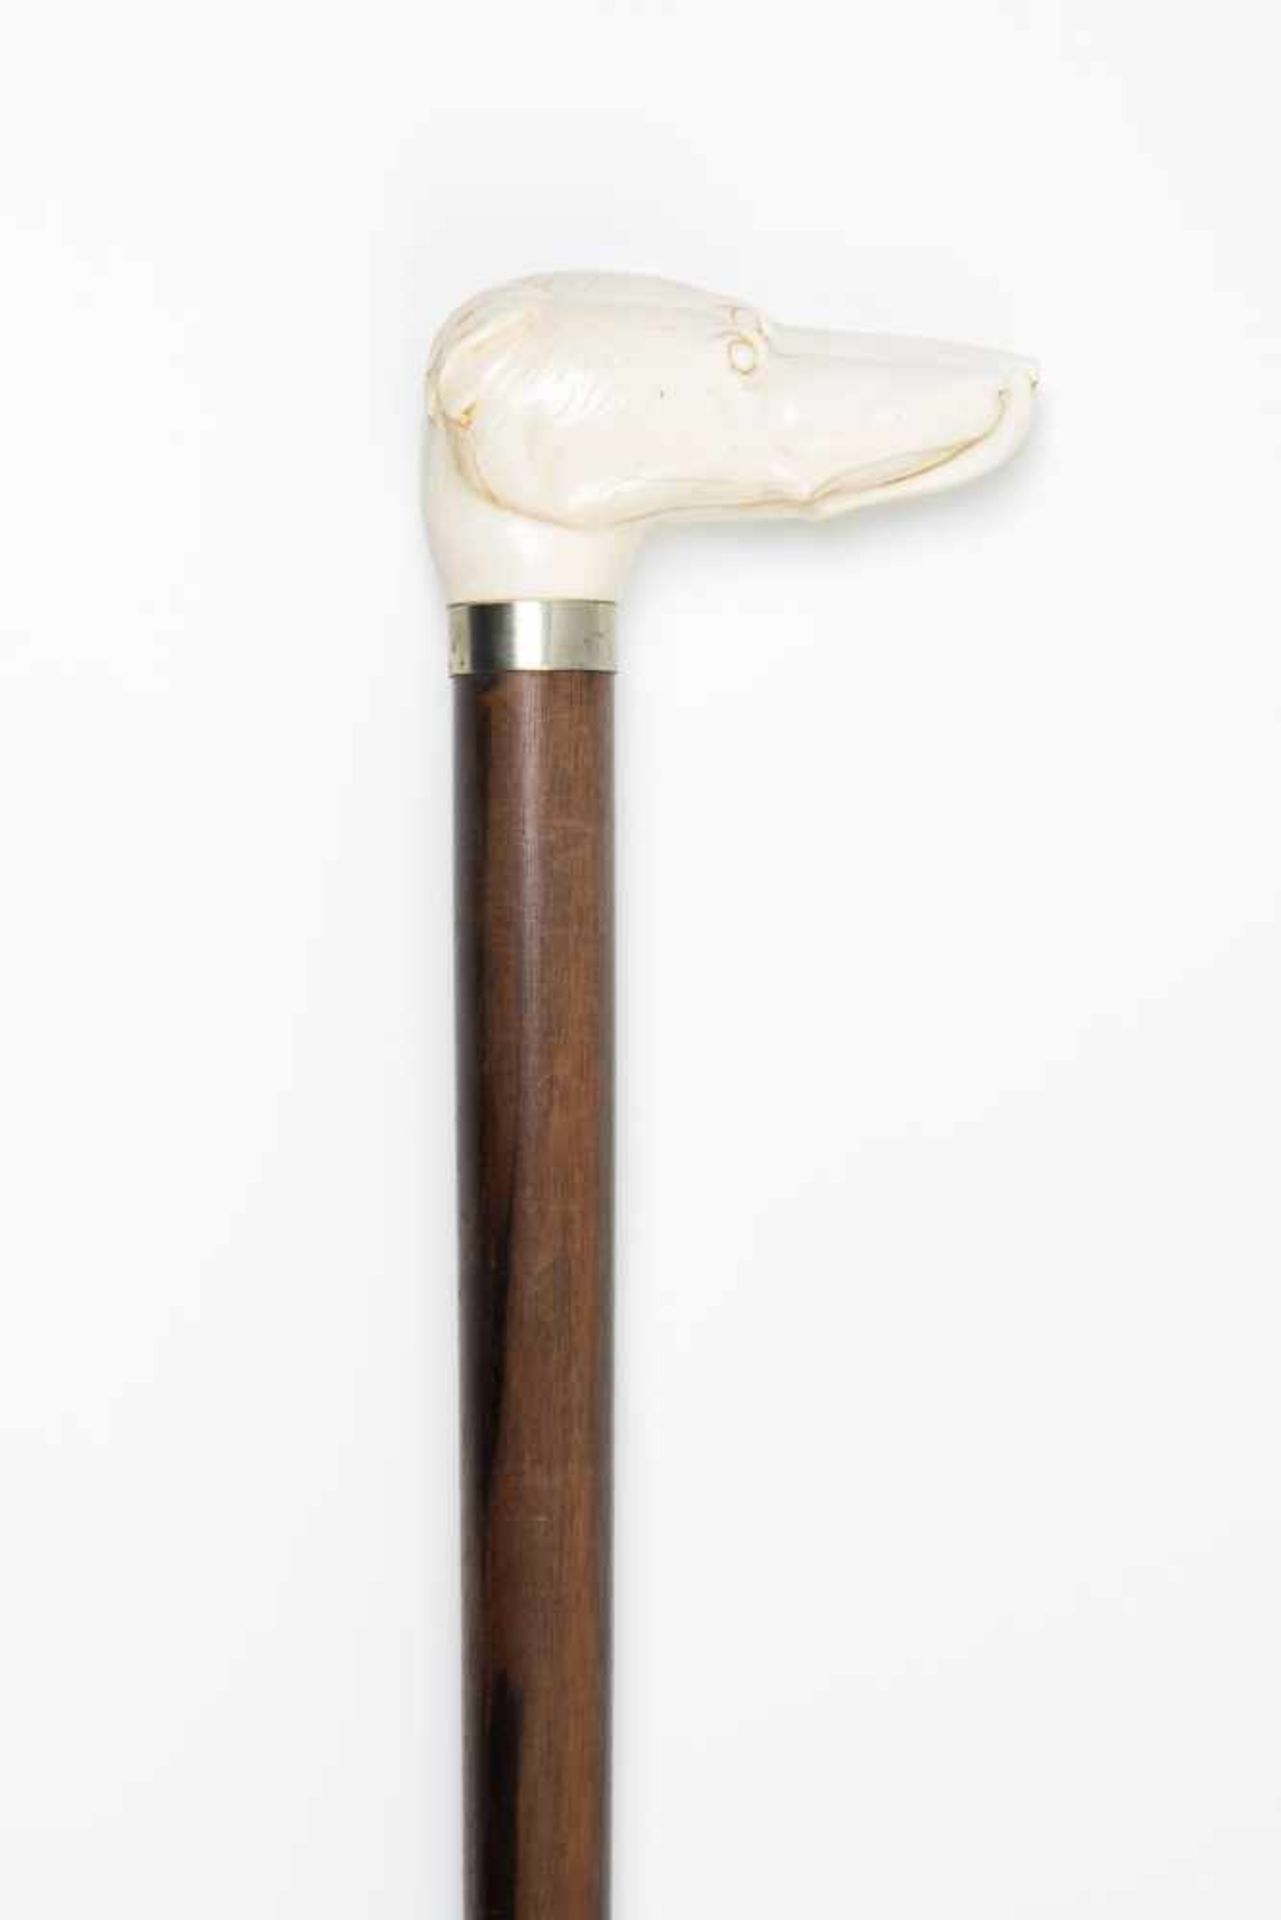 Spazierstock19./20. Jh. Elfenbeingriff plastisch geschnitzt in Form eines Windhundkopfes, an der